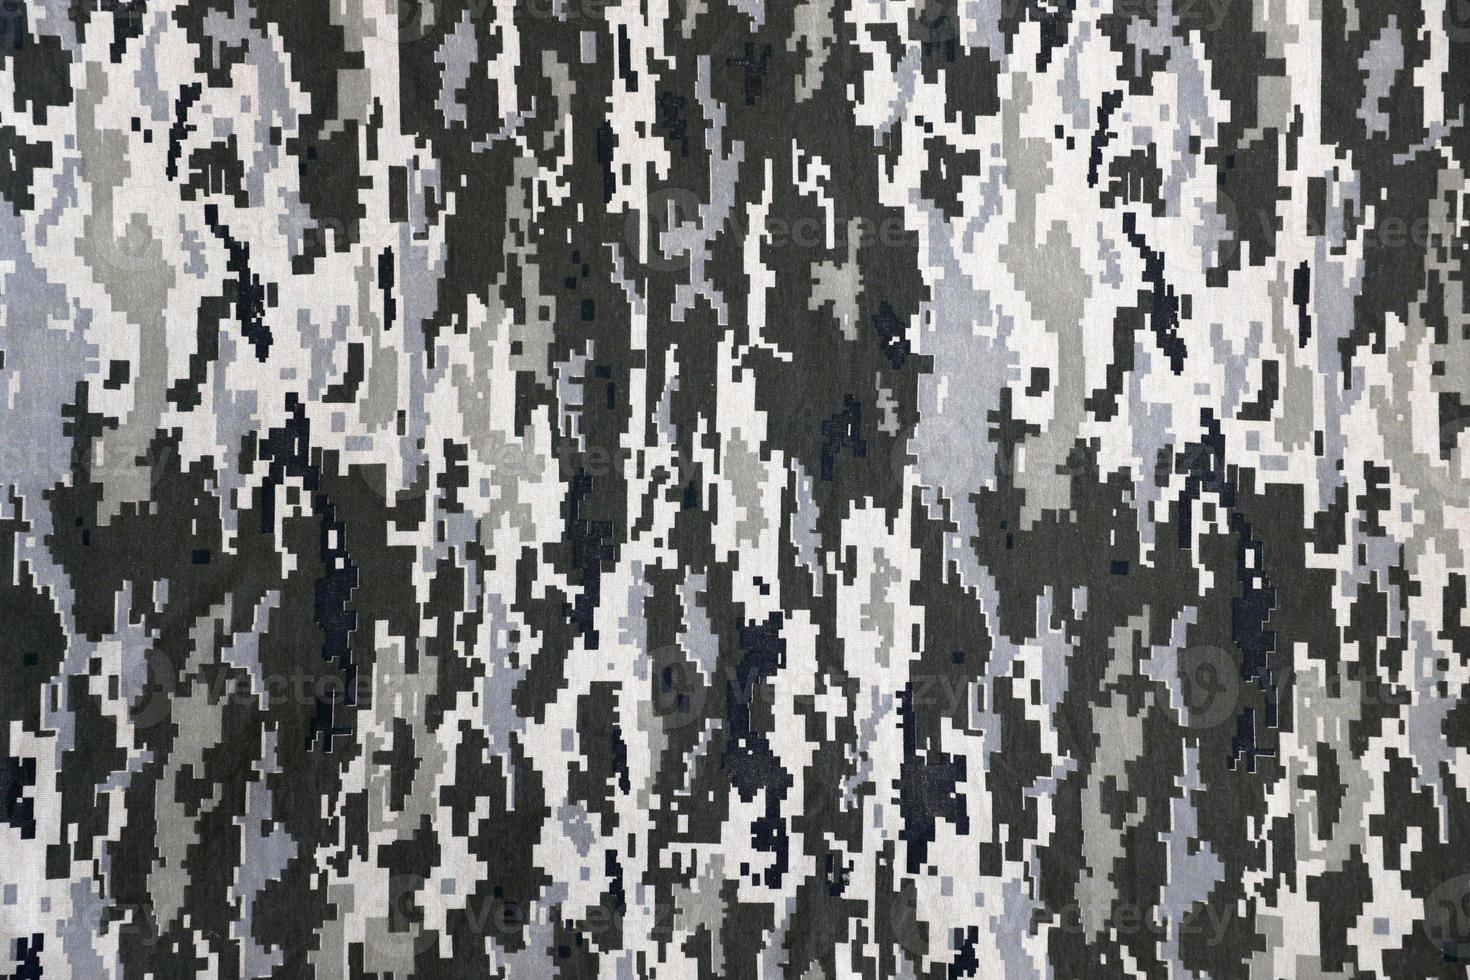 Stoff mit Textur der ukrainischen Militär-Pixeltarnung. Stoff mit Tarnmuster in grauen, braunen und grünen Pixelformen. offizielle uniform der ukrainischen soldaten foto